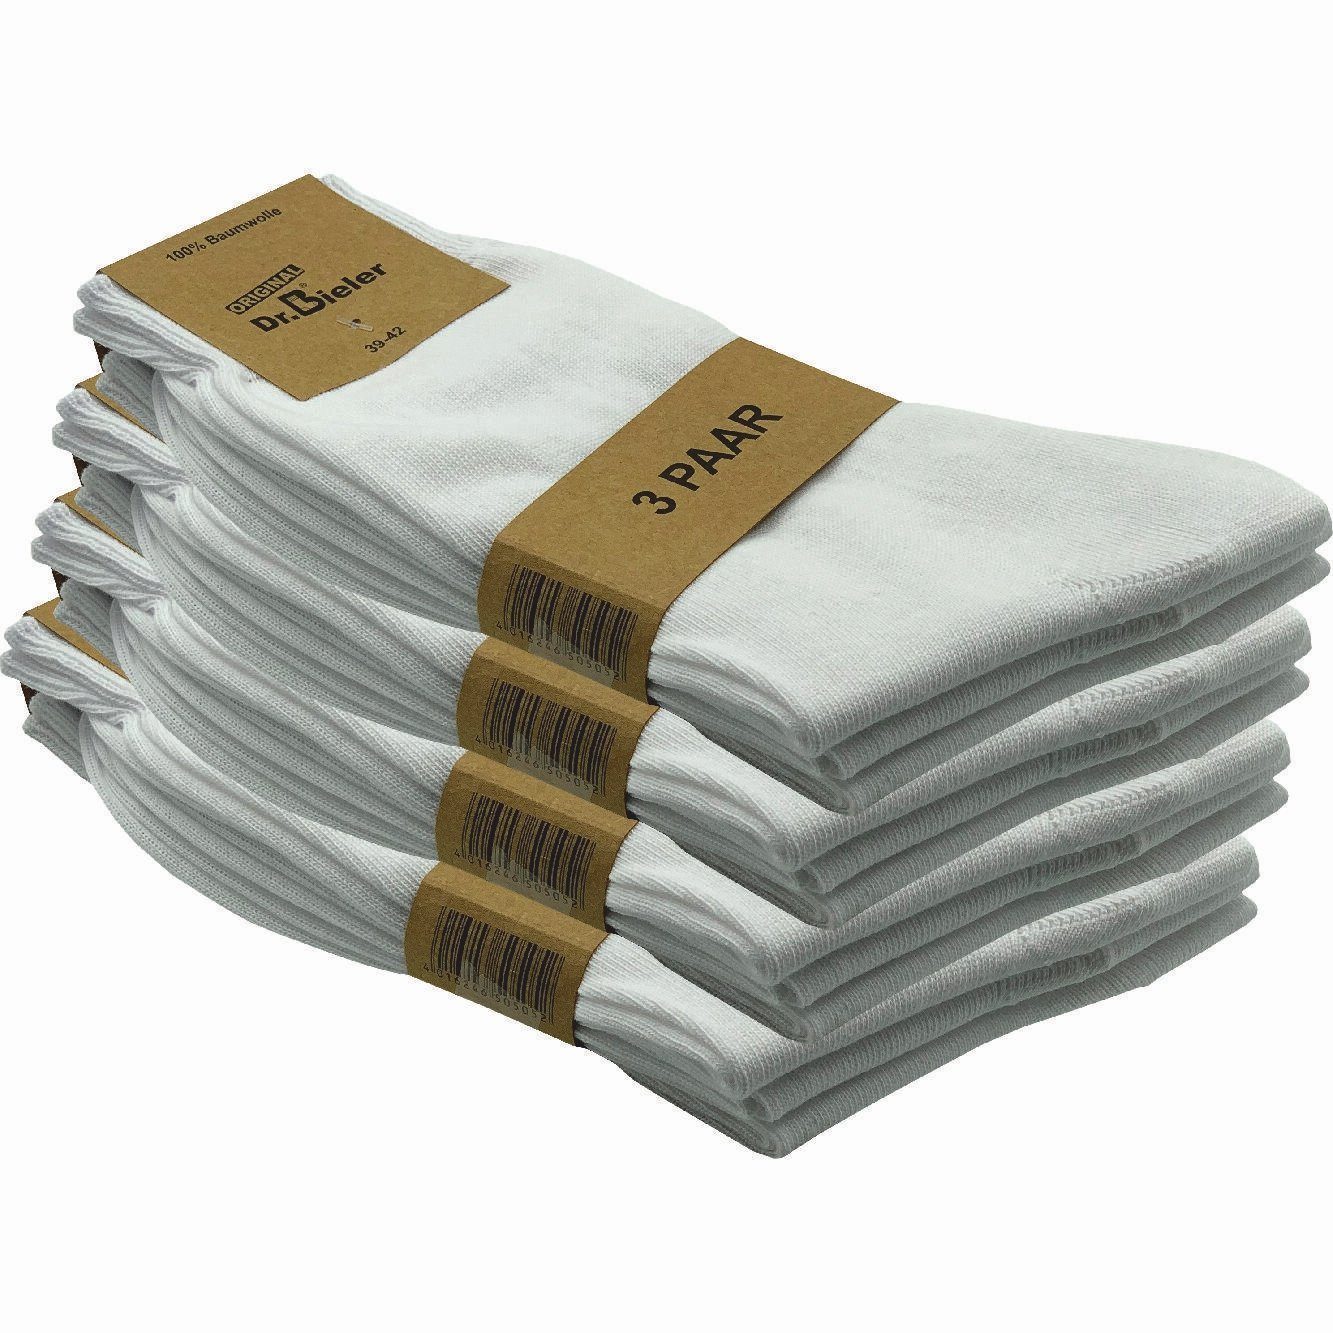 GAWILO Basicsocken für Herren aus 100% Baumwolle - ohne Gummi - ohne drückende Naht (12 Paar) in schwarz, weiß & blau - für Preisbewusste in ansprechender Qualität